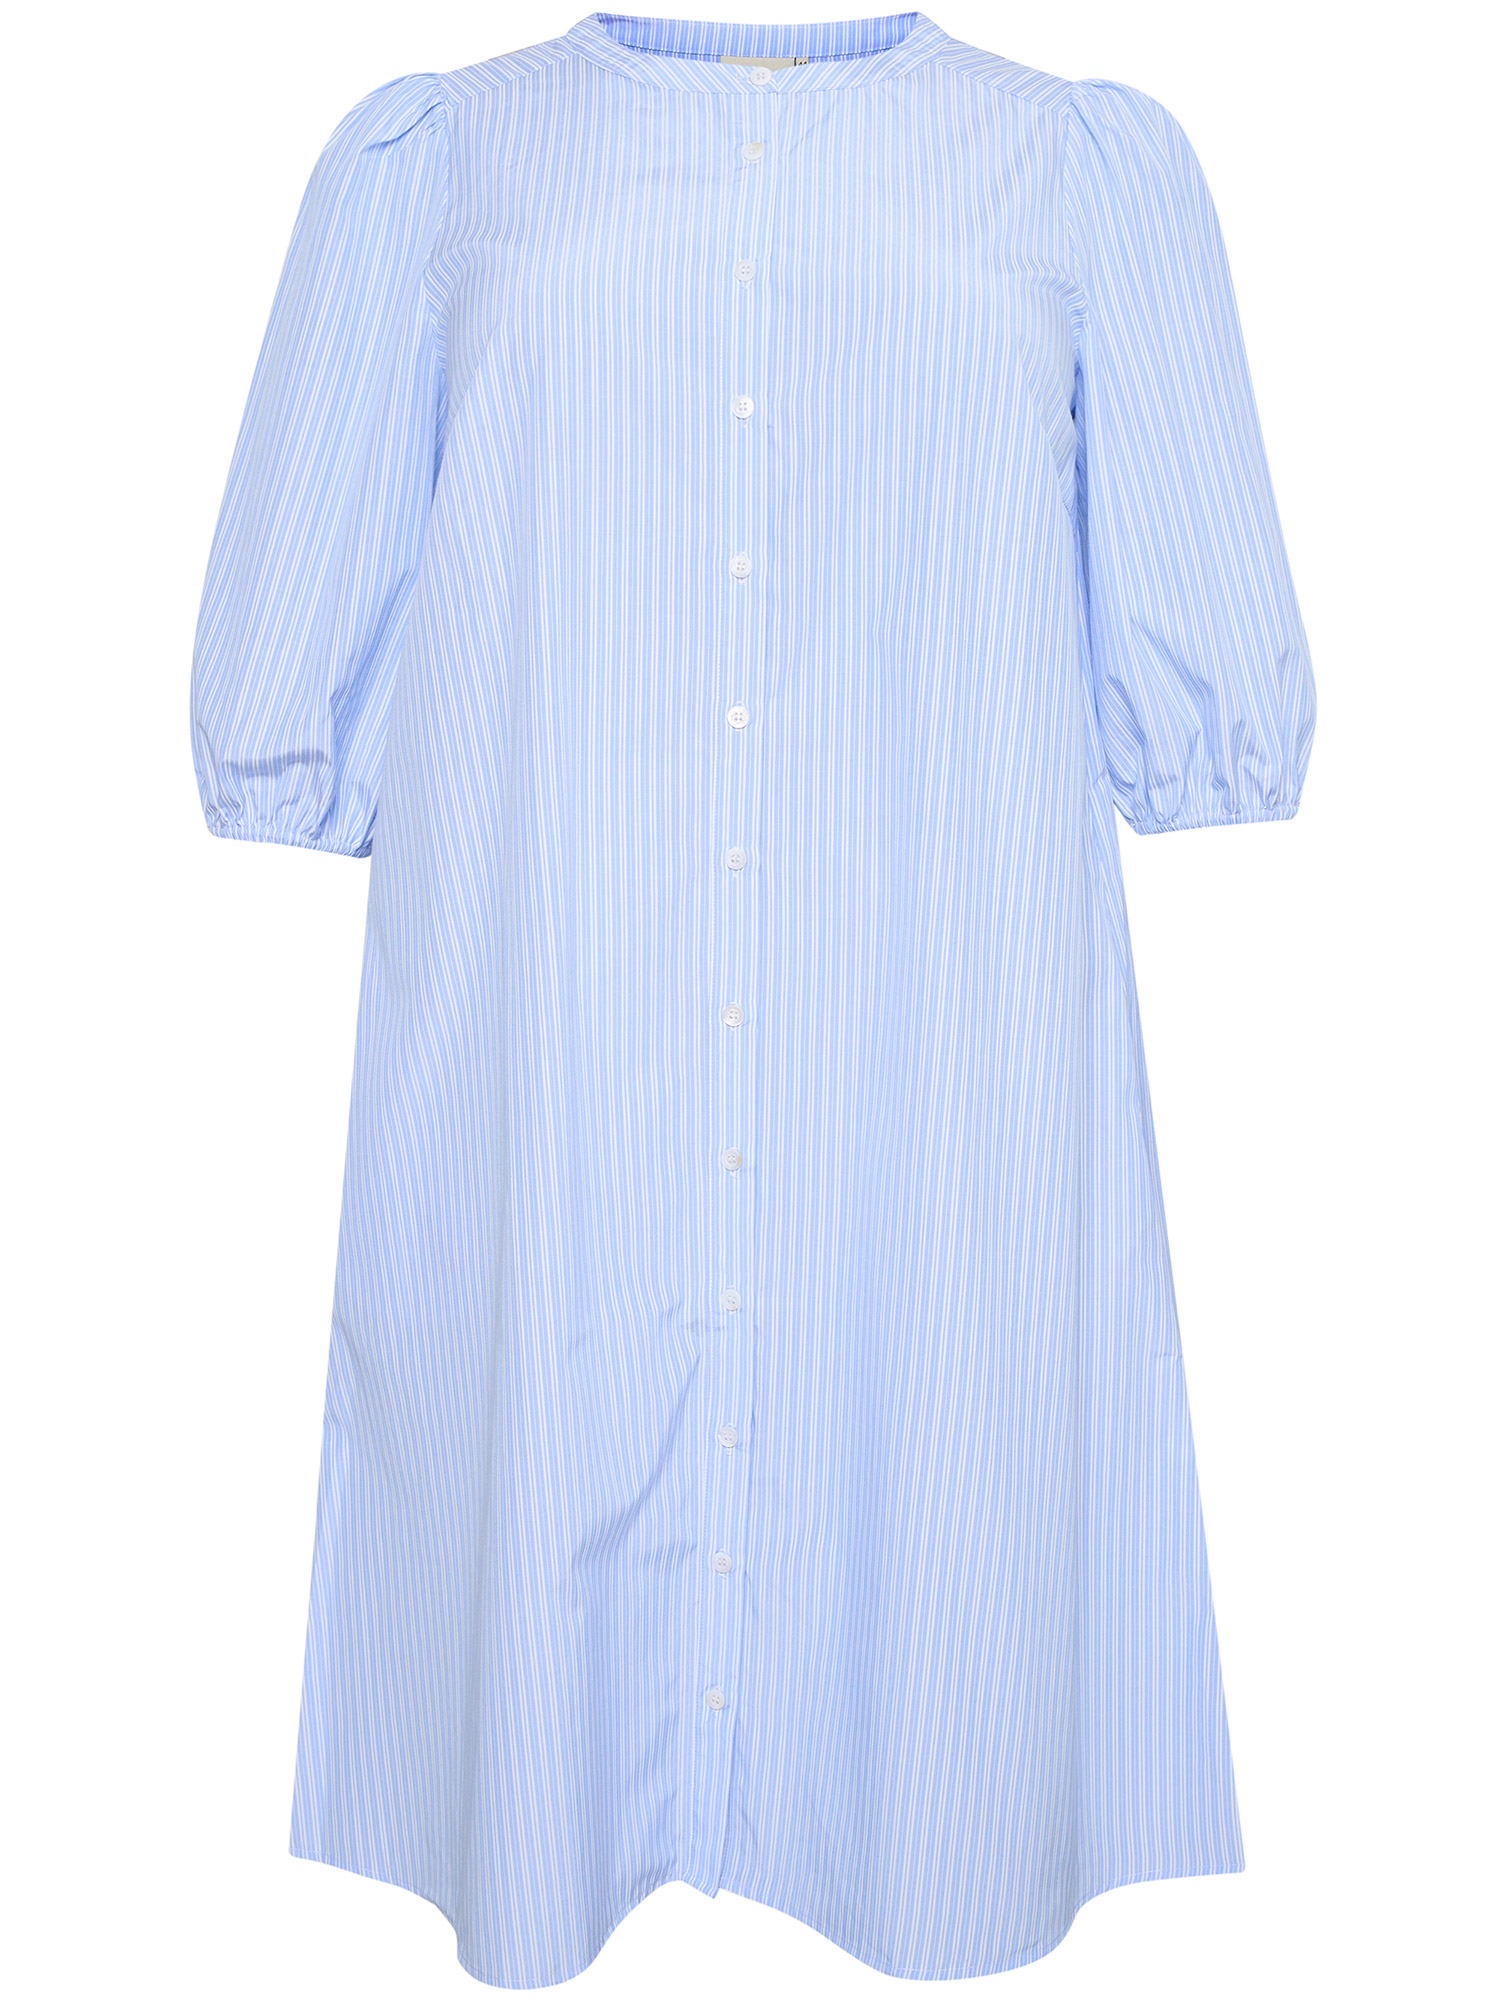 KCberana - Super fin lyseblå skjorte kjole med hvide striber fra Kaffe Curve